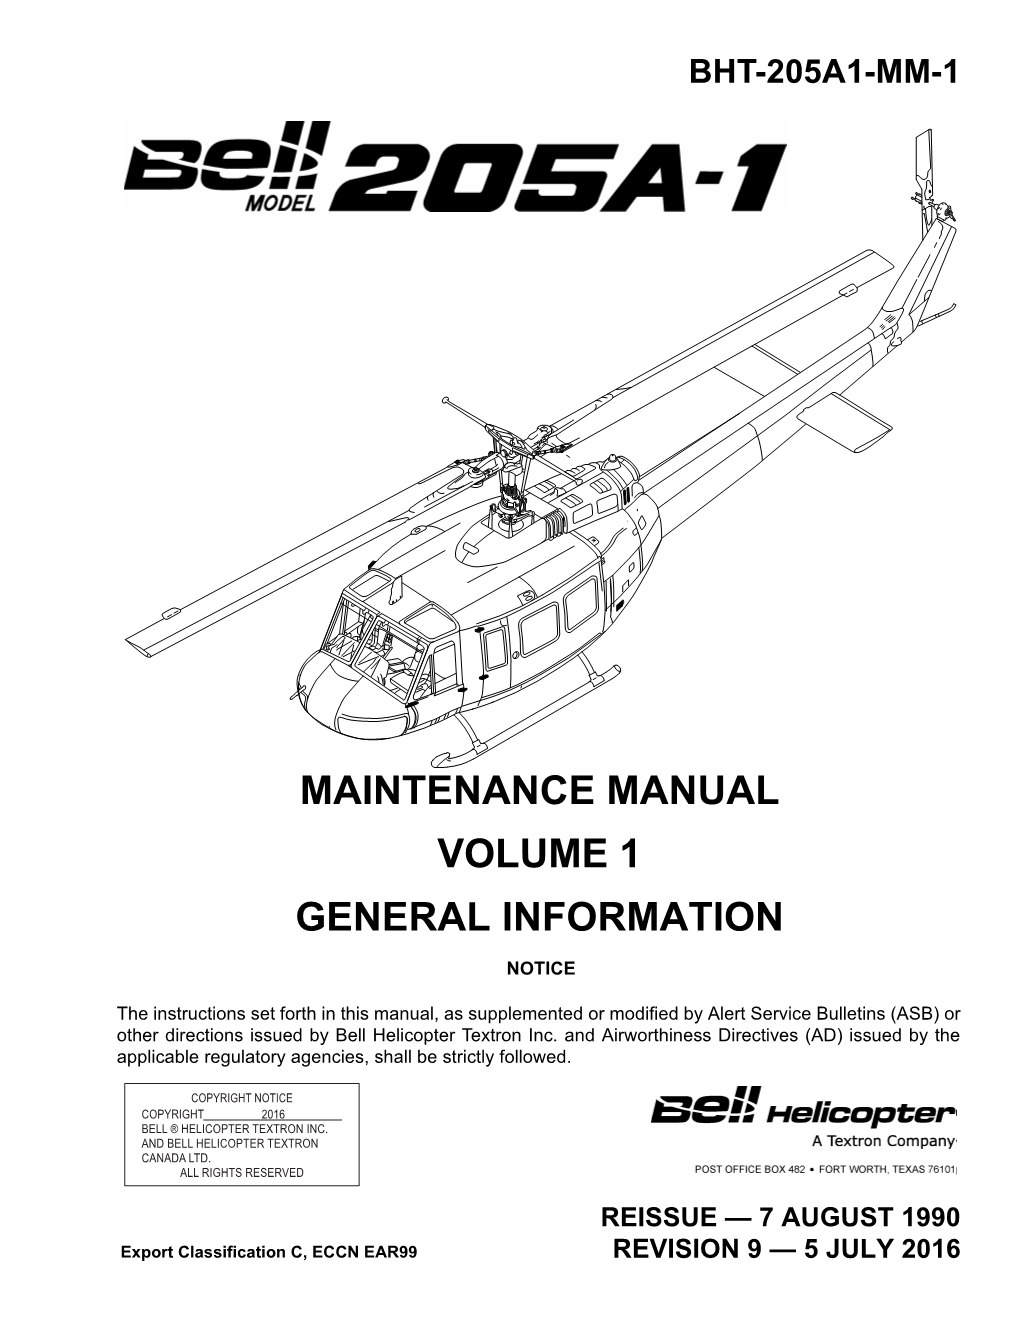 Maintenance Manual Volume 1 General Information